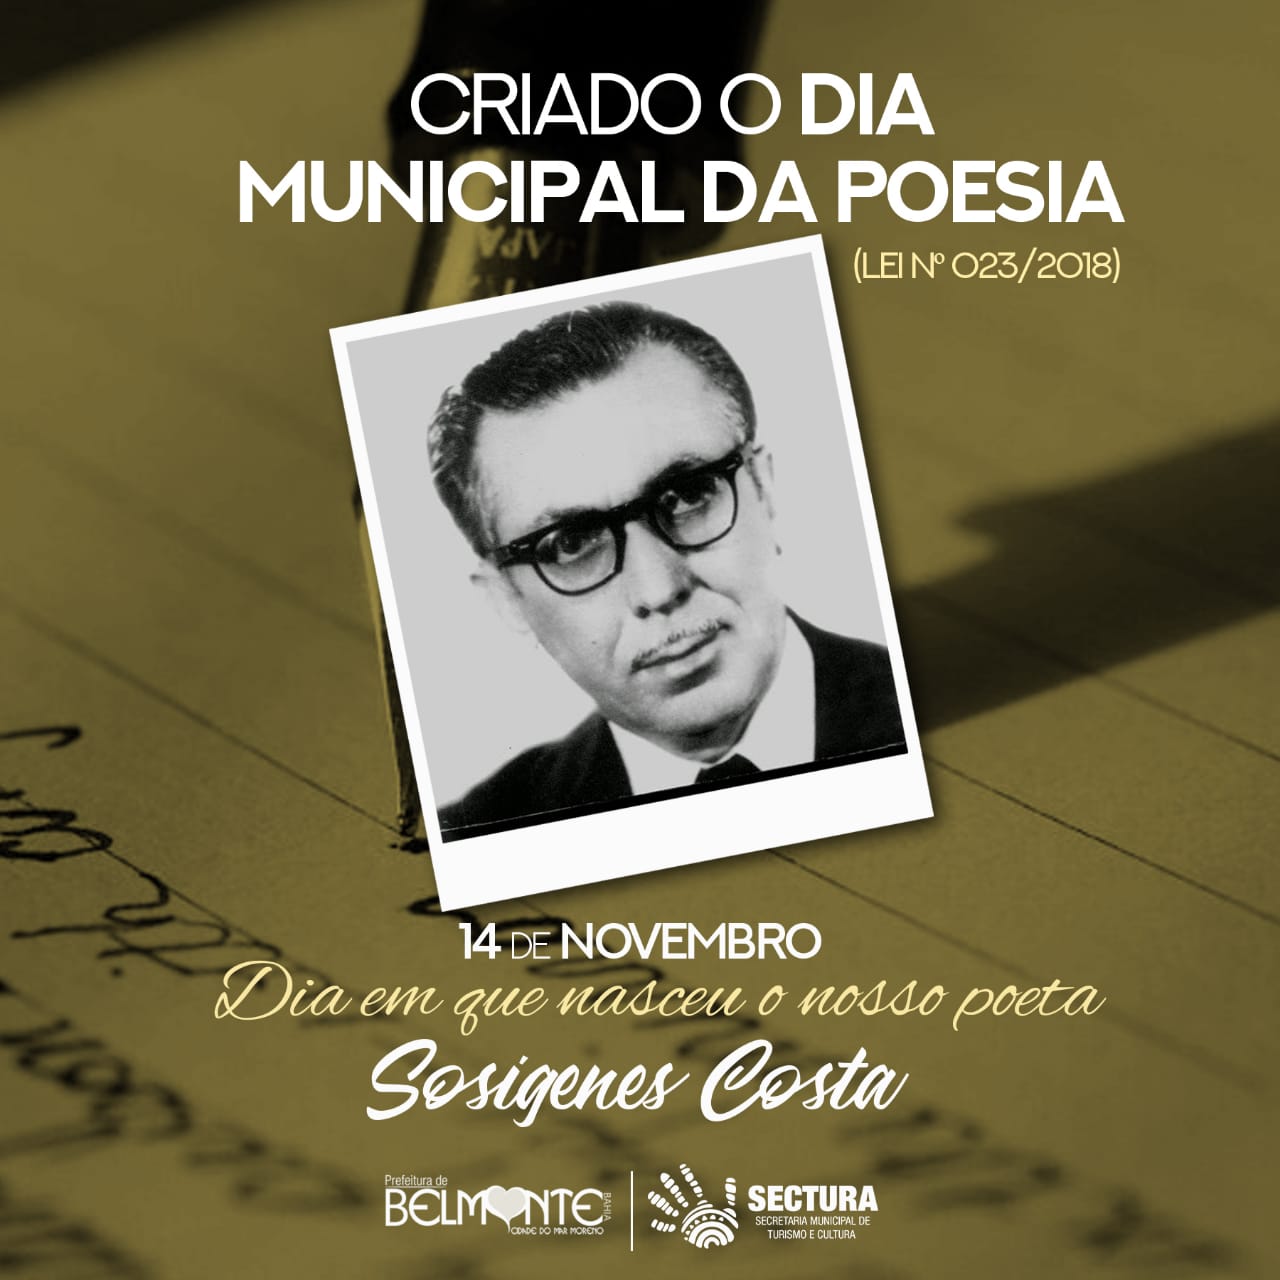 Belmonte comemora o Dia Municipal da poesia, em homenagem ao Poeta Sosígenes Costa.